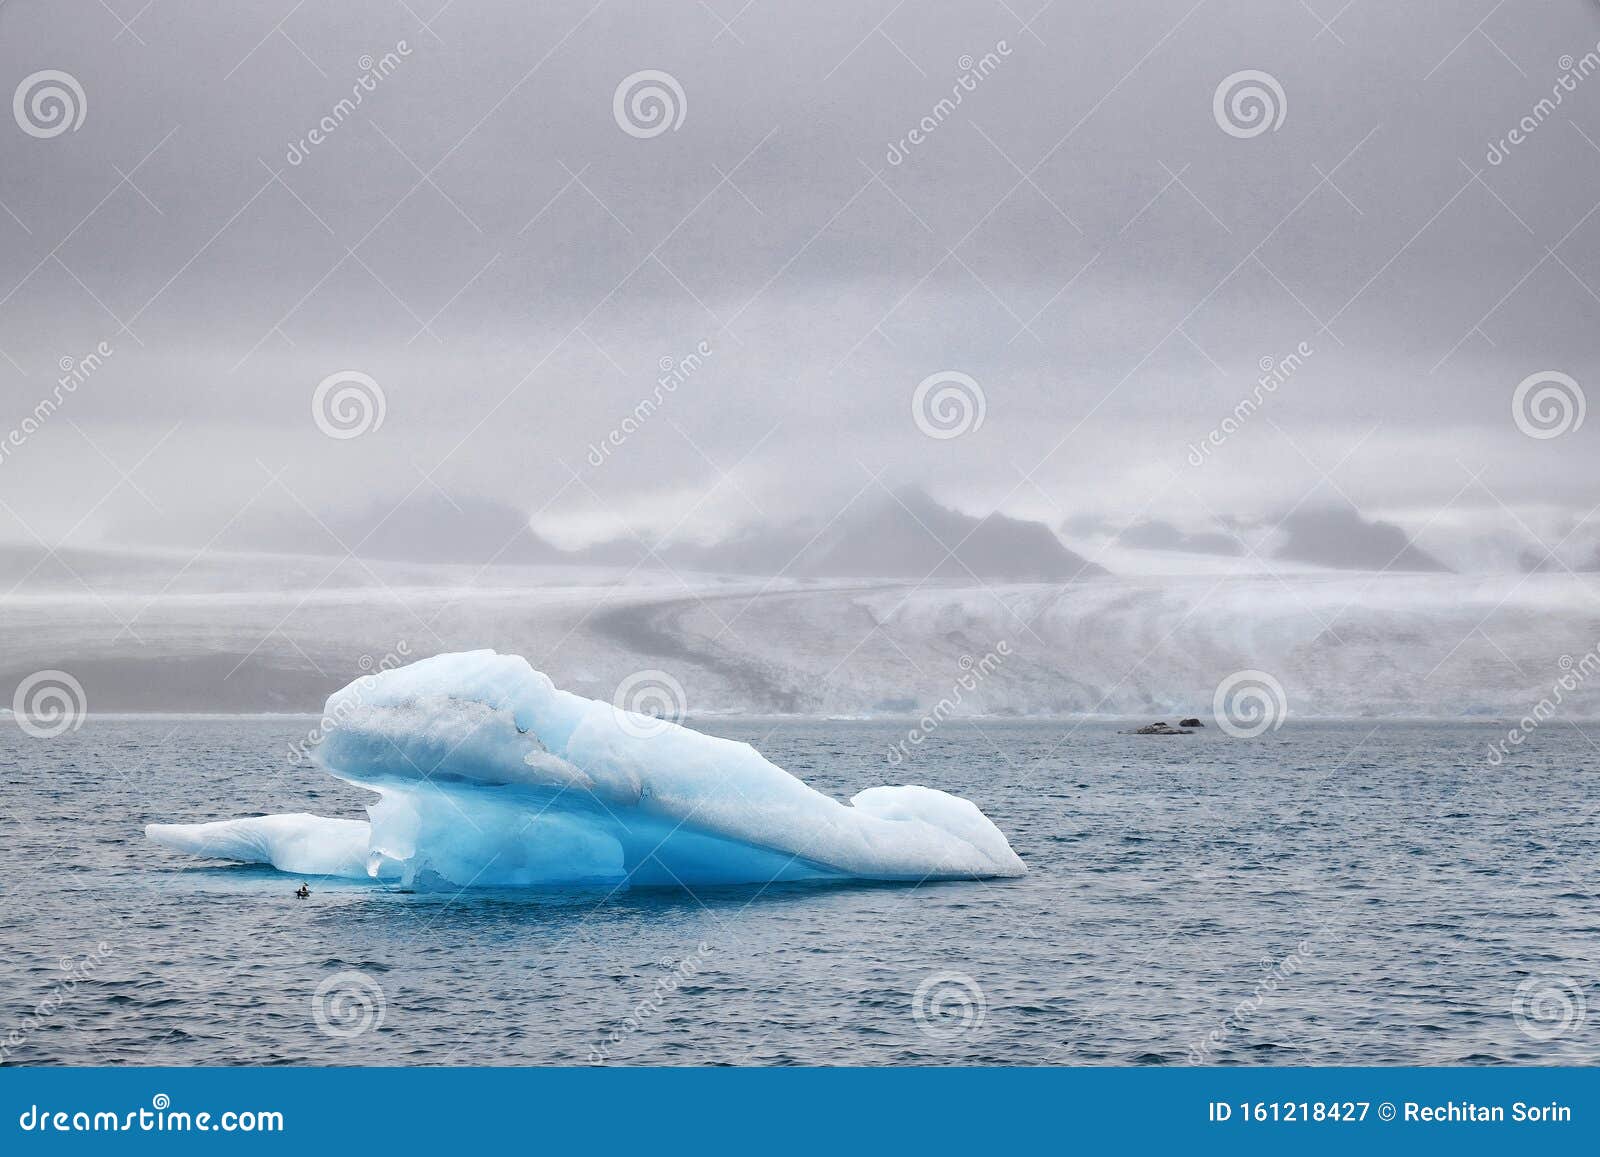 stormy landscape at jokulsarlon - the most famous icelandÃ¢â¬â¢s glacier lagoon.